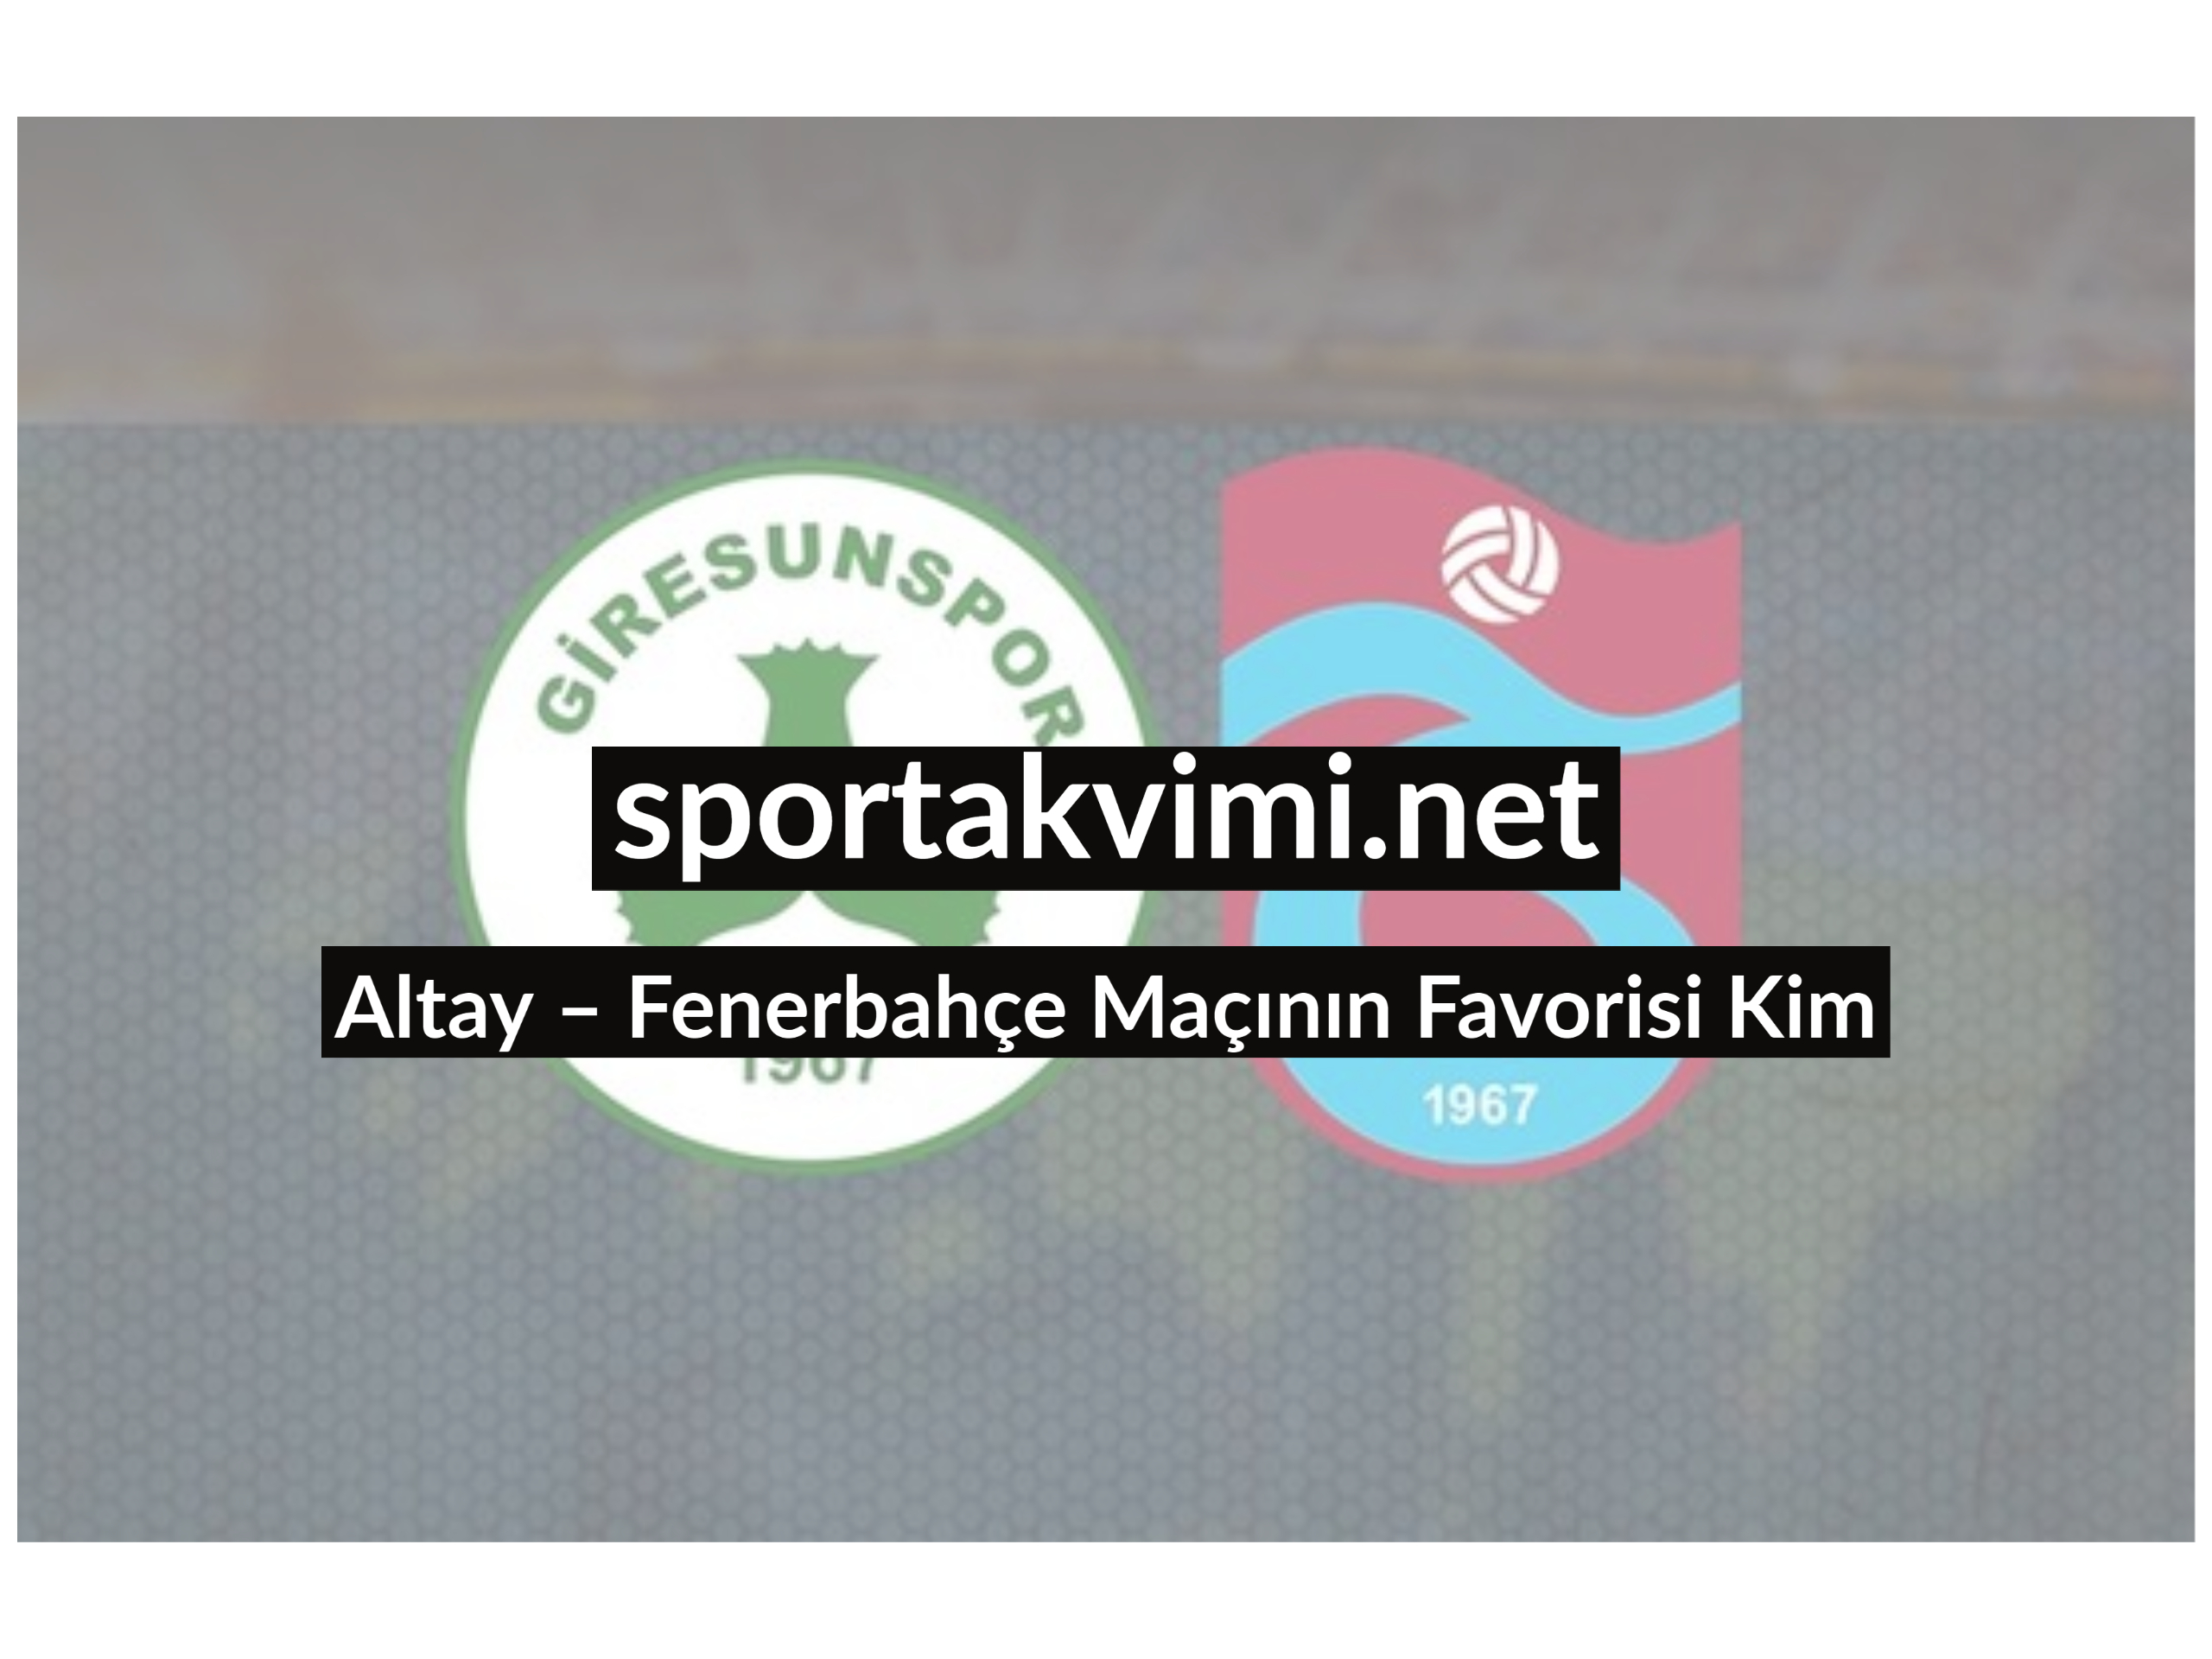 Altay – Fenerbahçe Maçının Favorisi Kim